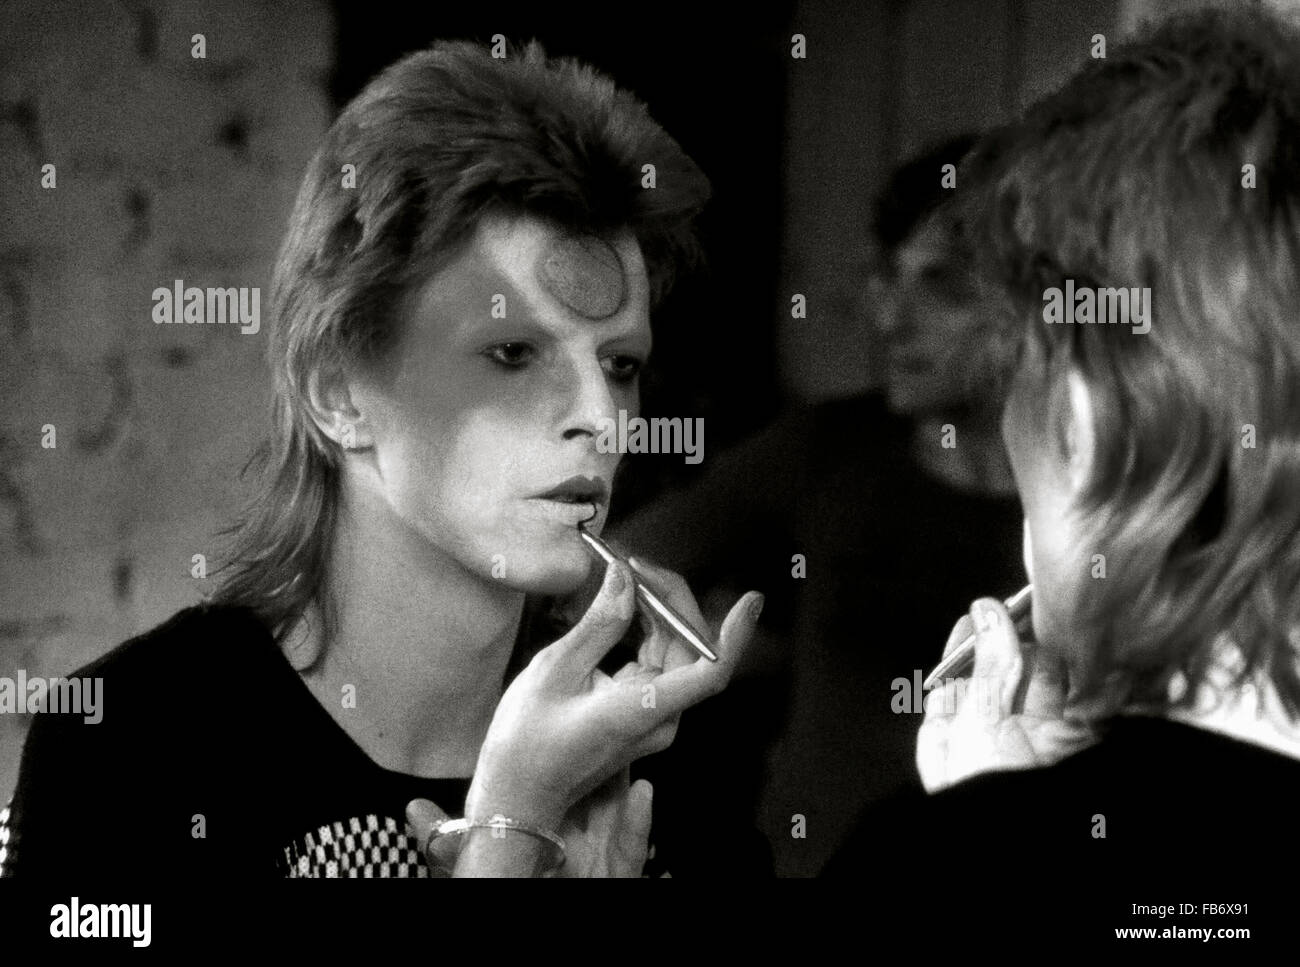 Lewisham, Londres, Angleterre, Royaume-Uni. 22 mai 1973. L'application de David Bowie Ziggy Stardust en dressing maquillage Backstage. Son guitariste Mick Ronson est derrière lui et peut être vue reflétée dans le miroir. Roger Bamber/Alamy Live News Banque D'Images